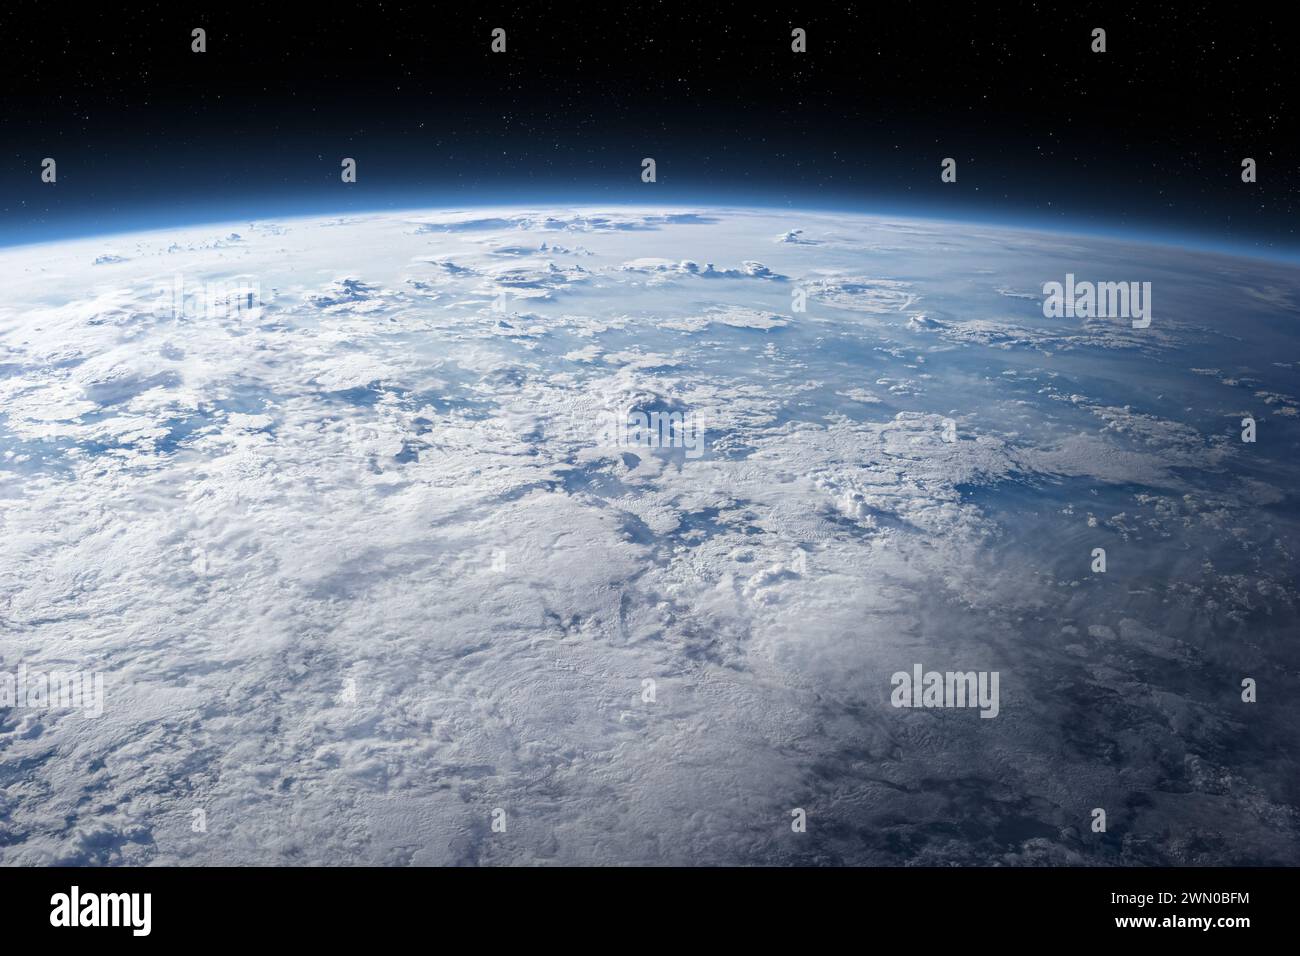 Terra nuvolosa nello spazio. La superficie terrestre è coperta da nuvole. Incredibile immagine della Terra coperta di nuvole. Elementi di questa immagine forniti dalla NASA. Foto Stock